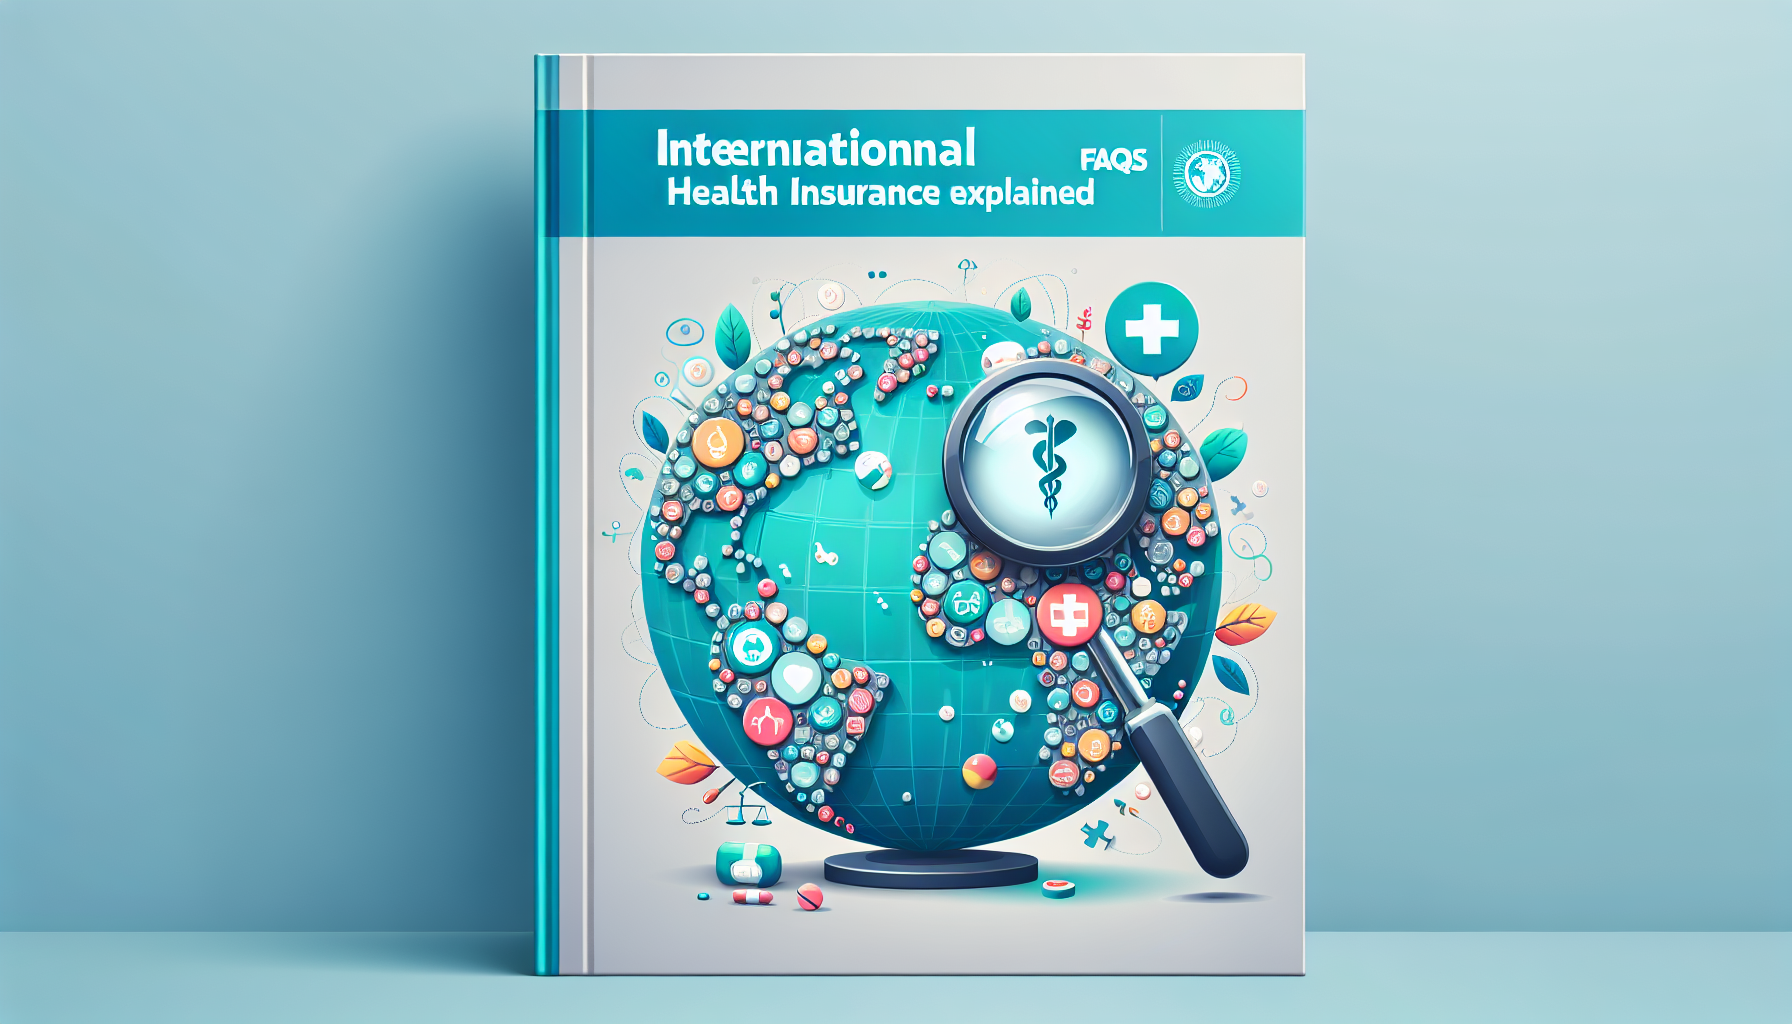 découvrez tout sur l'assurance santé internationale : qu'est-ce qu'une assurance santé internationale, comment fonctionne-t-elle et pourquoi est-elle essentielle pour les expatriés et les voyageurs internationaux.